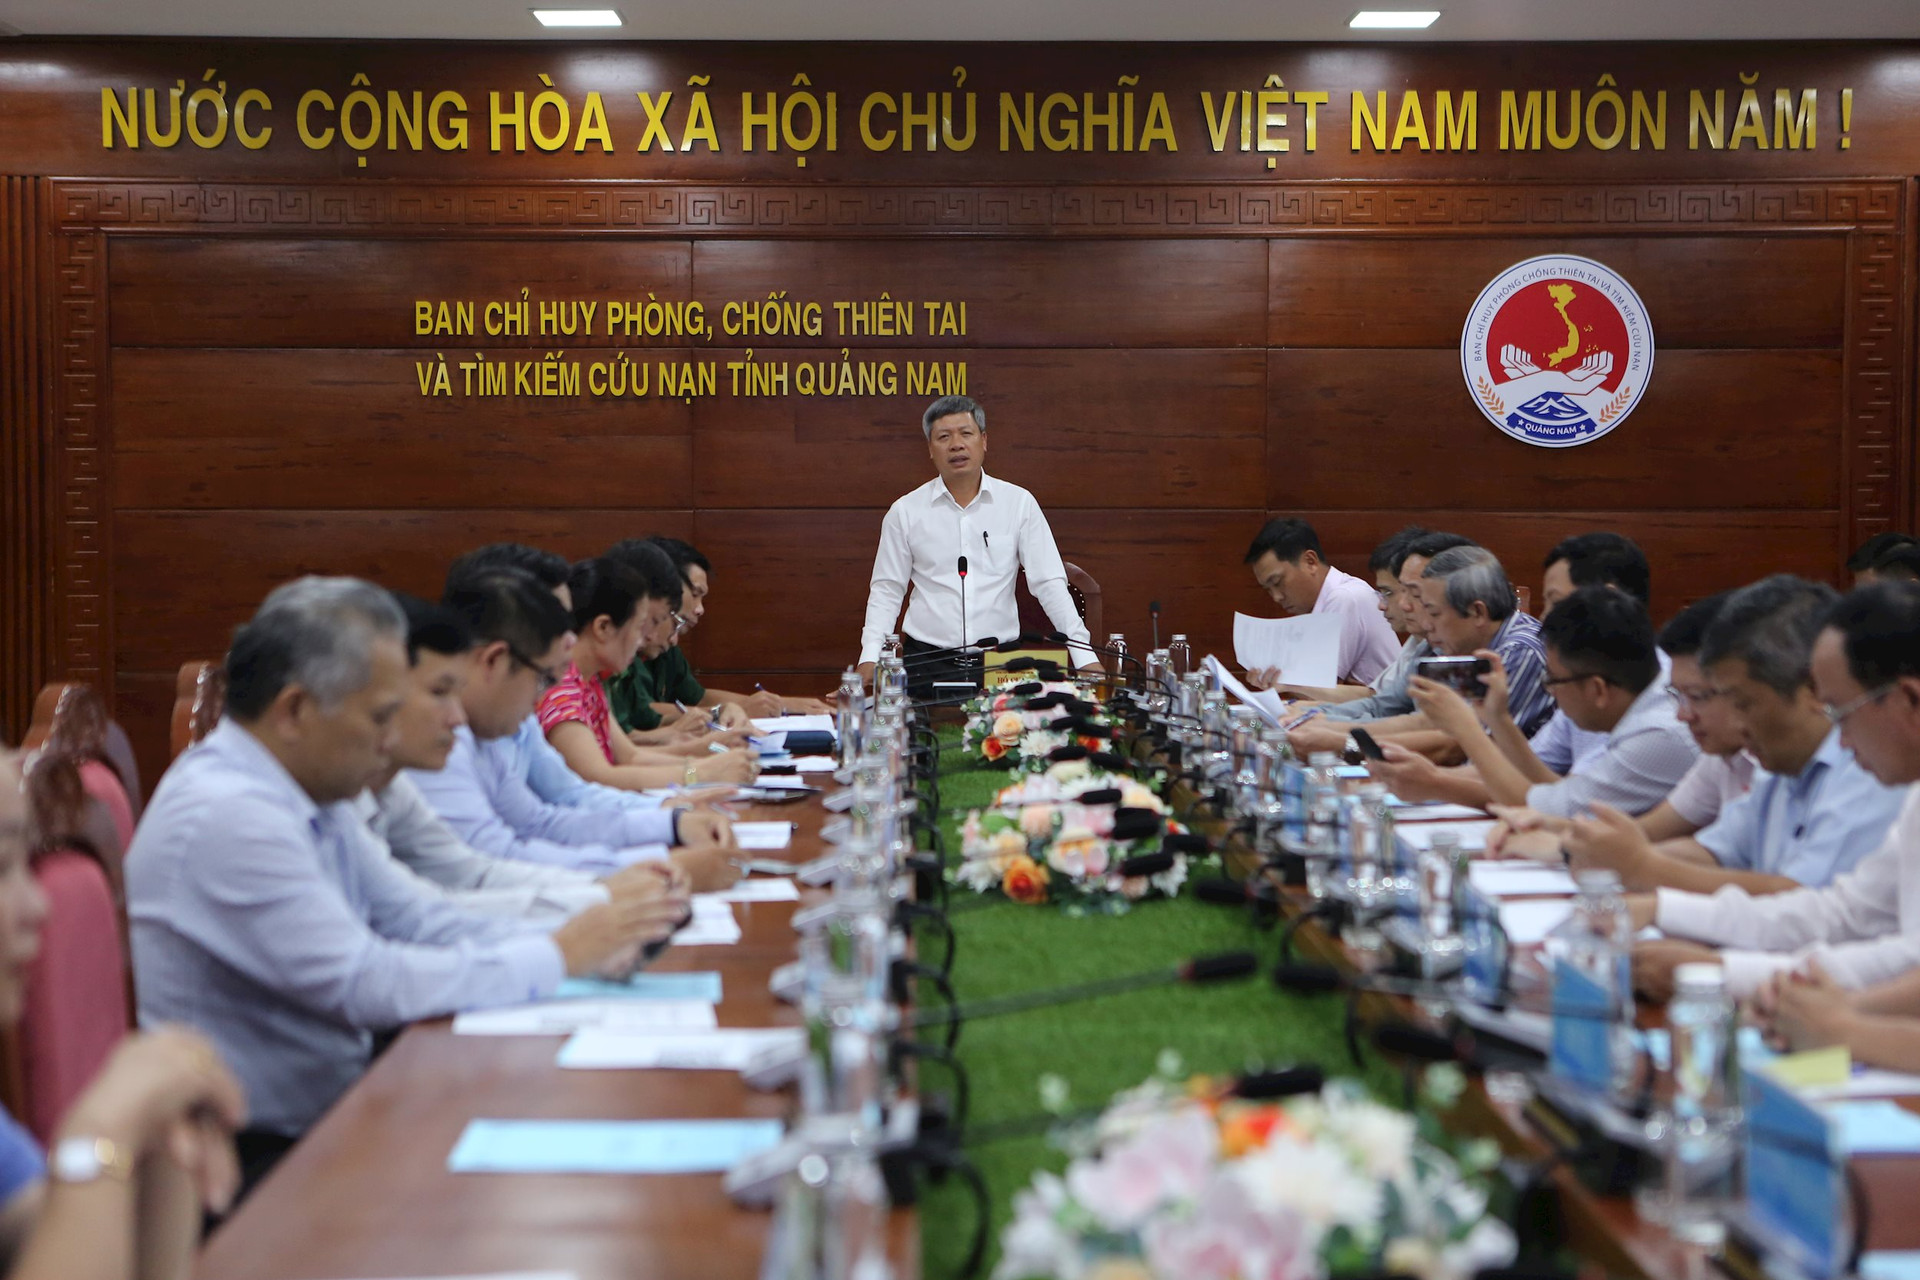 Phó Chủ tịch UBND tỉnh Hồ Quang Bửu yêu cầu c nhanh chóng hoàn thiện các kế hoạch, phương án ứng phó thiên tai phù hợp với Luật Phòng thủ dân sự sắp có hiệu lực. Ảnh: T.C